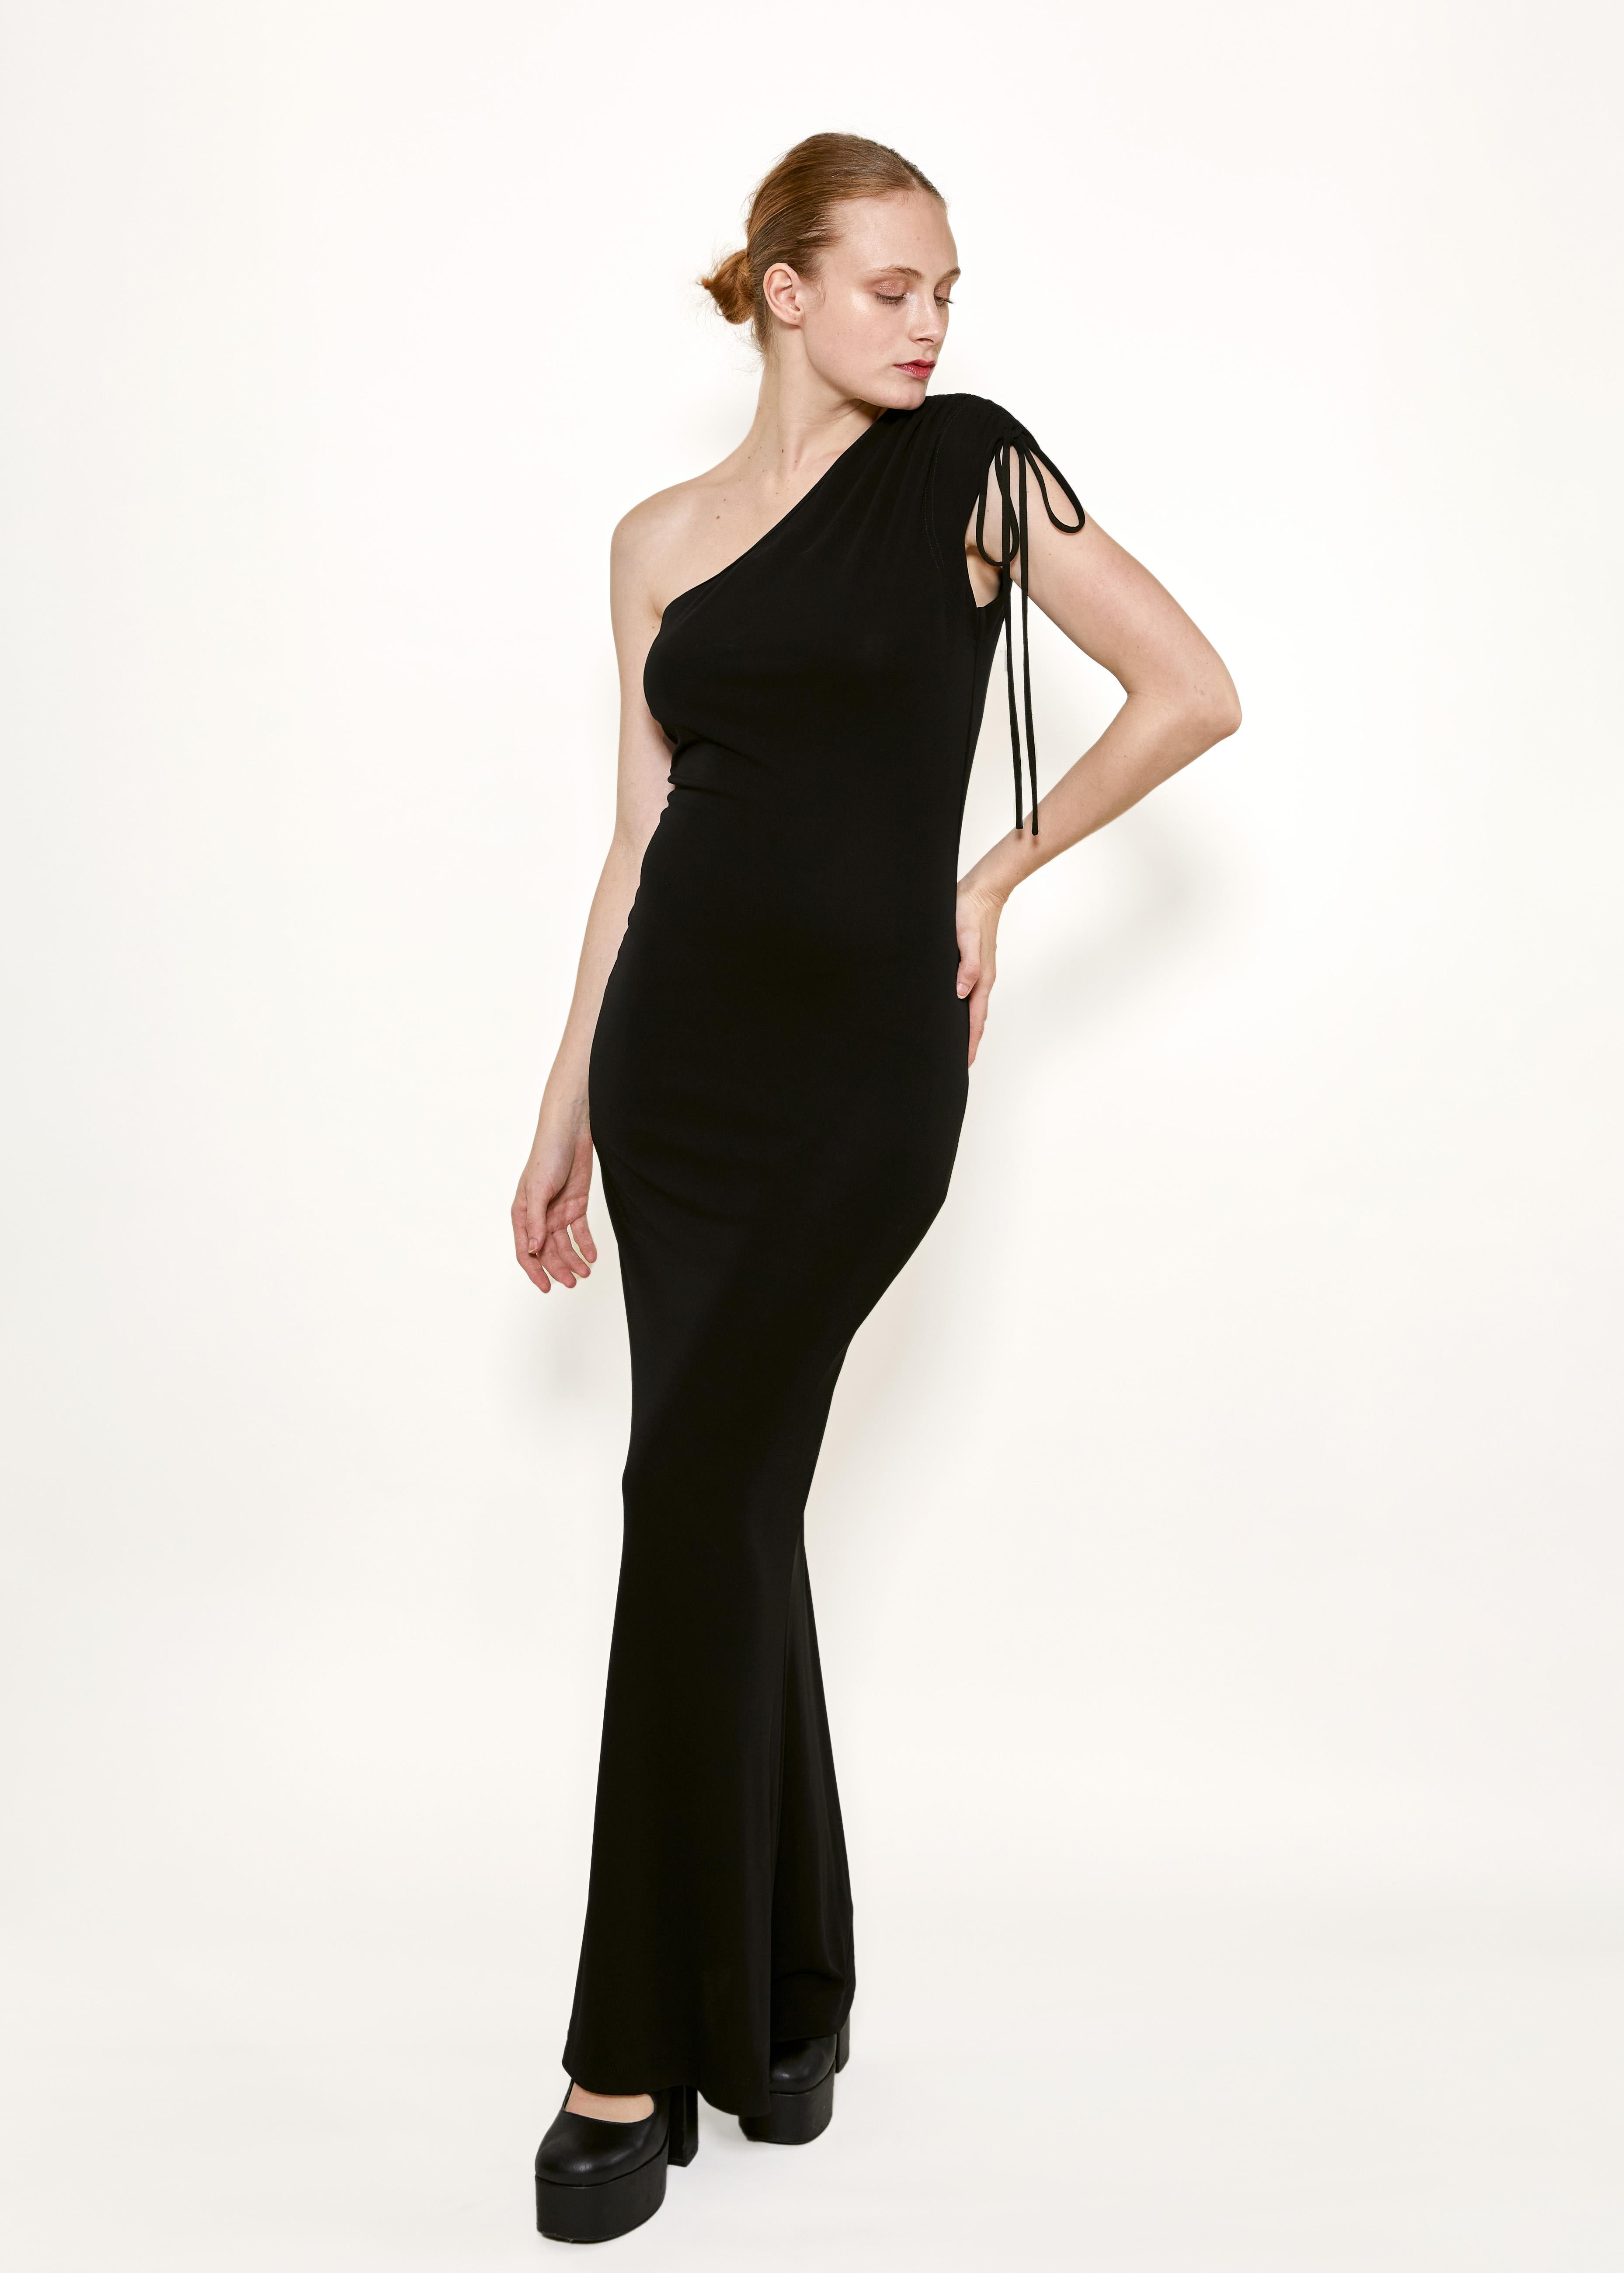 Offrez-vous le luxe avec la robe asymétrique en jersey noir Vivienne Westwood Gold Label. Cette pièce couture est dotée d'un cordon de serrage à l'épaule pour une touche unique, tandis que sa longueur maxi lui confère grâce et élégance. Le tissu en